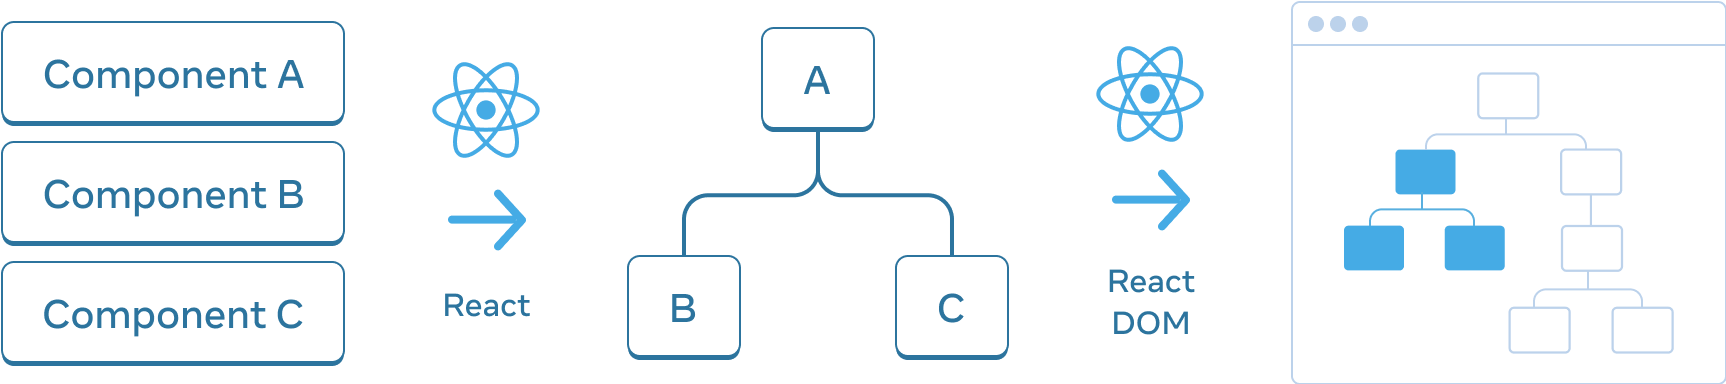 水平排列的三个部分的图表。第一部分有三个垂直堆叠的矩形，并分别标记为 Component A、Component B 和 Component C。向下一个窗格过渡的是一个带有 React 标志的箭头，标记为 React。中间部分包含一棵组件树，根节点标记为 A，有两个子节点分别标记为 B 和 C。下一个部分再次使用带有 React 标志的箭头进行过渡，标记为 React DOM。第三和最后一个部分是浏览器的线框图，包含一棵有 8 个节点的树，其中只有一个子集被突出显示（表示中间部分的子树）。
